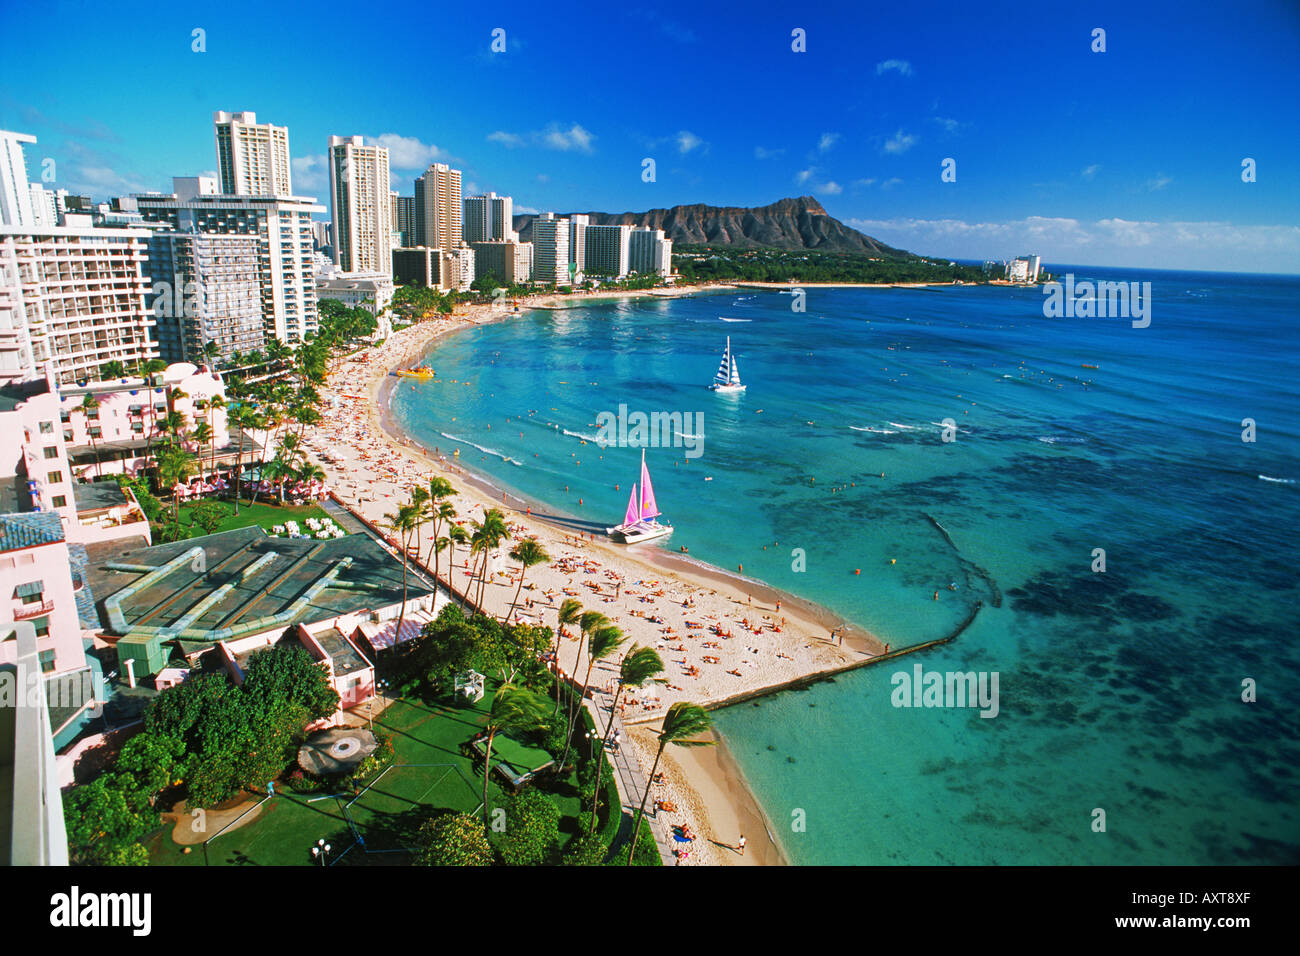 La plage de Waikiki et Diamond Head en face de la plage avec des hôtels et les catamarans sur l'île d'Oahu à Hawaii Banque D'Images